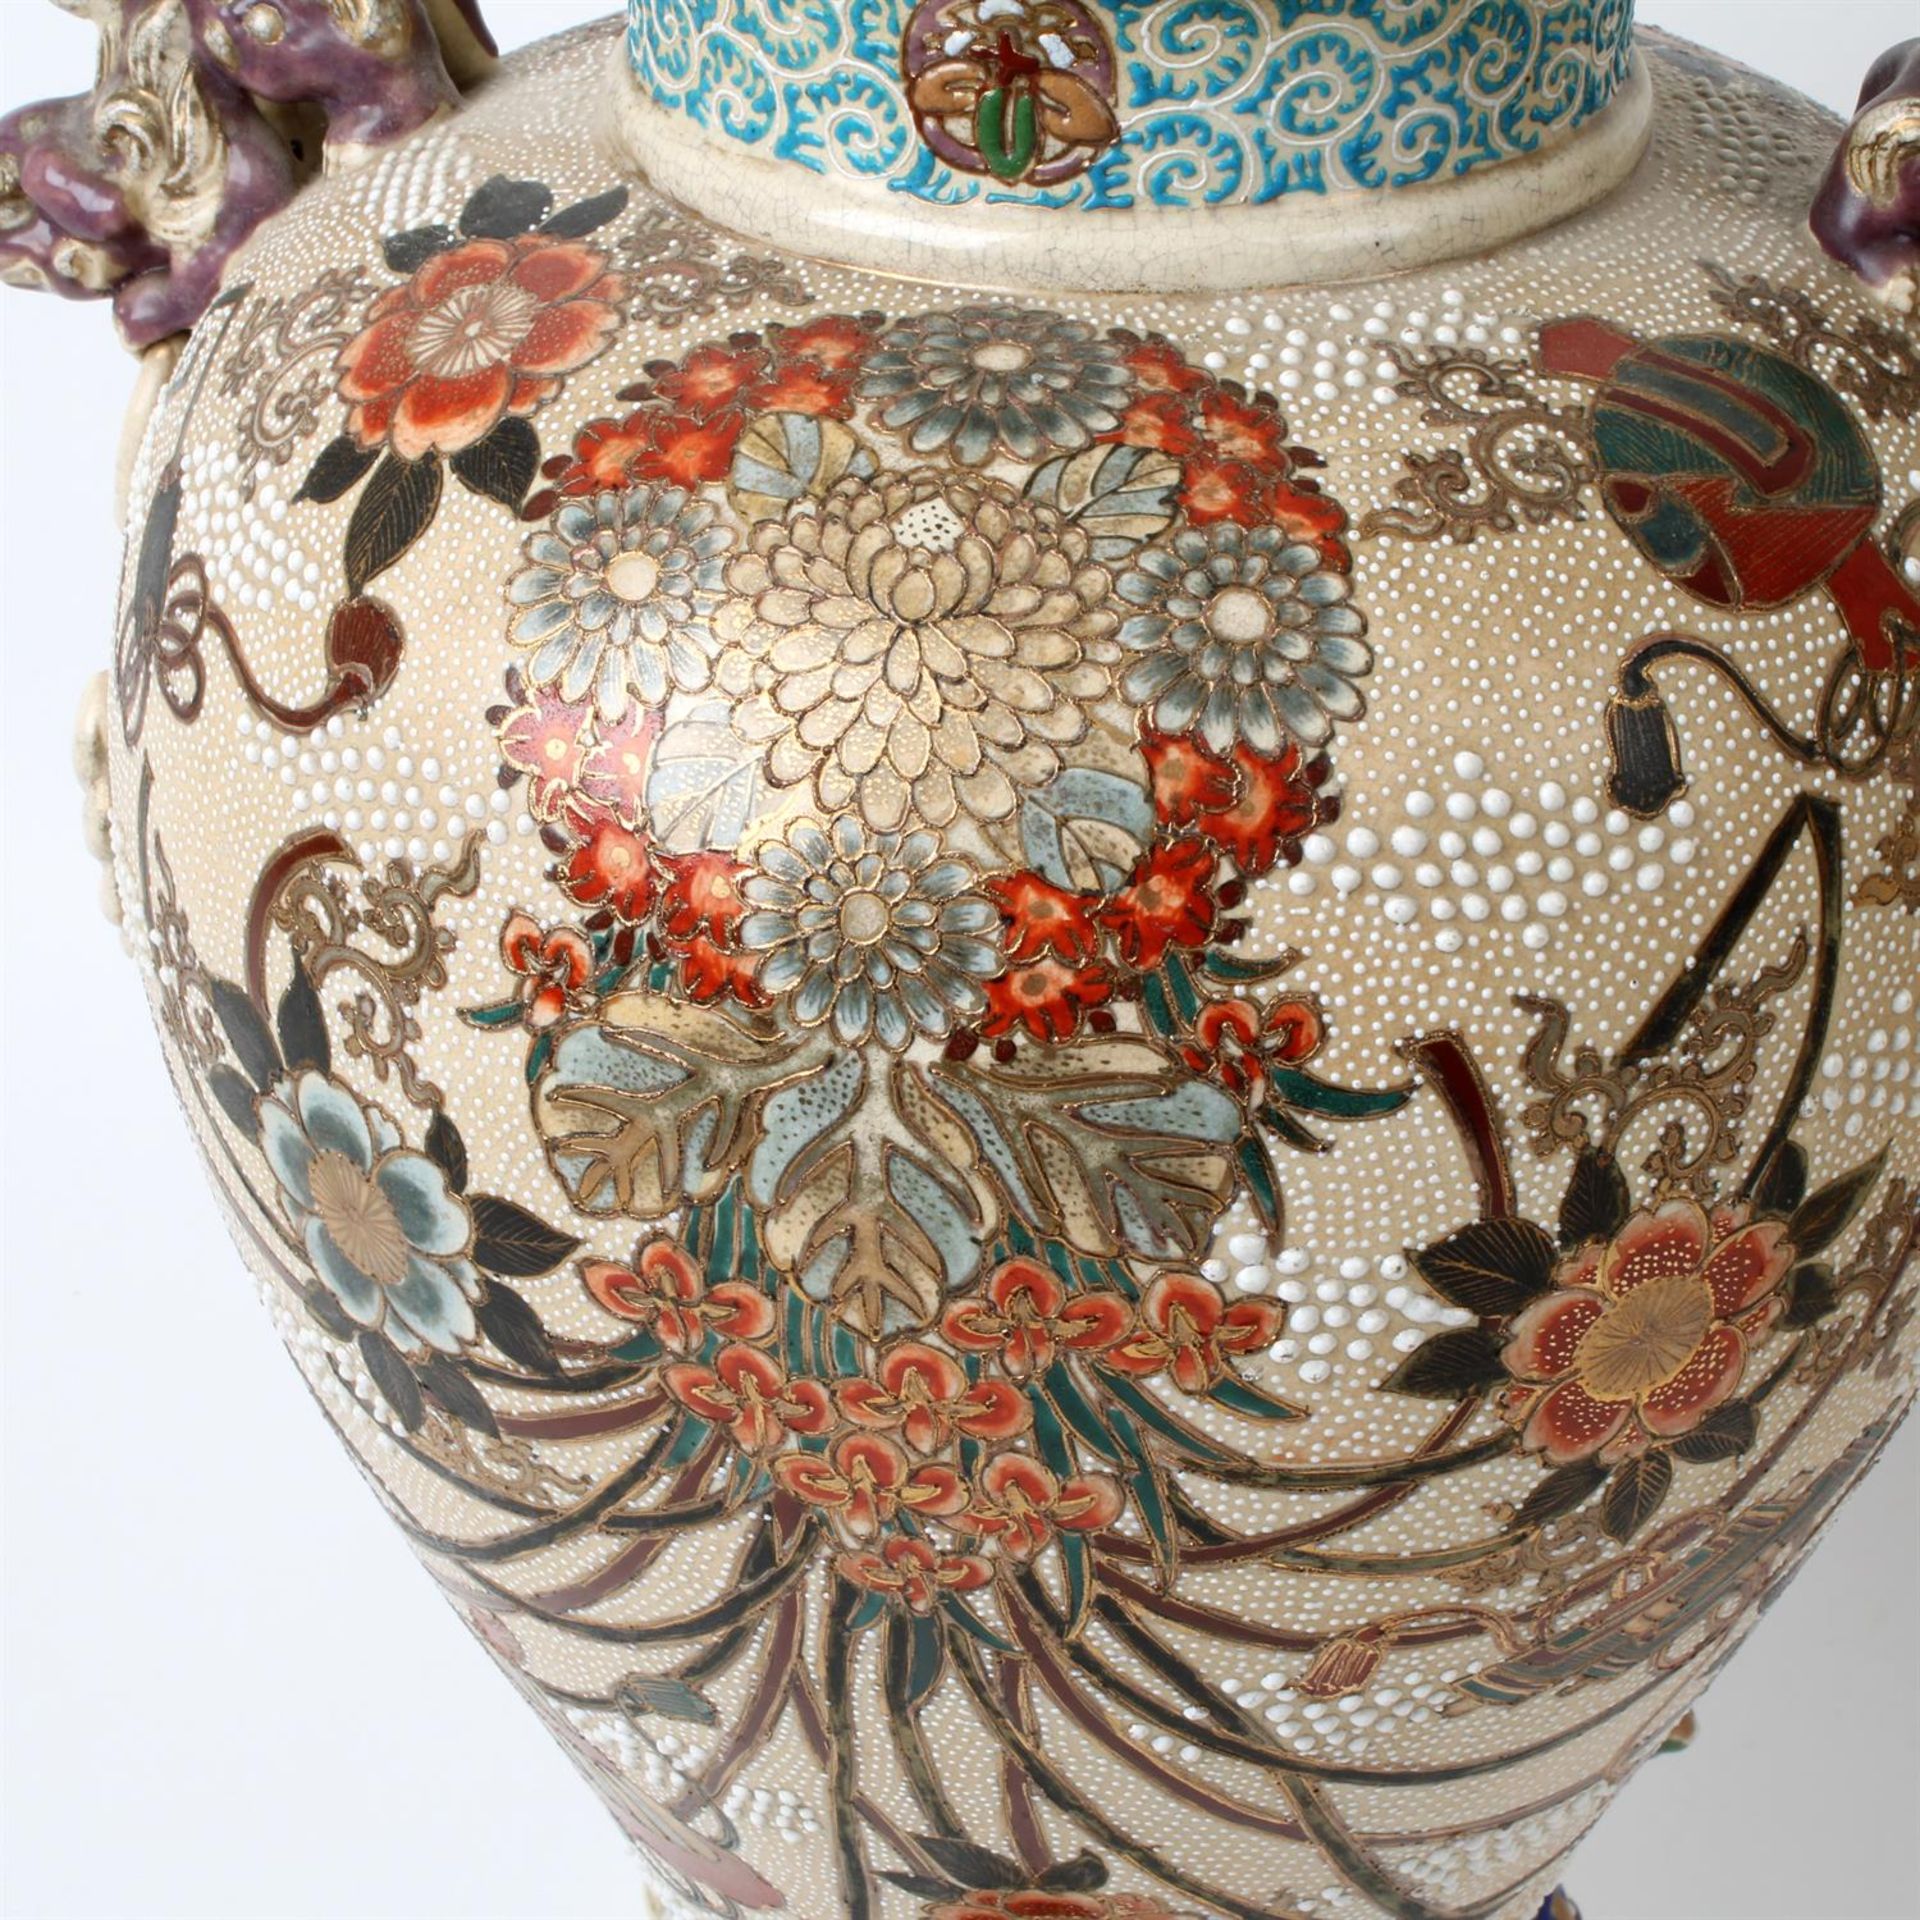 Early 20th century Japanese Satsuma vases - Image 3 of 5